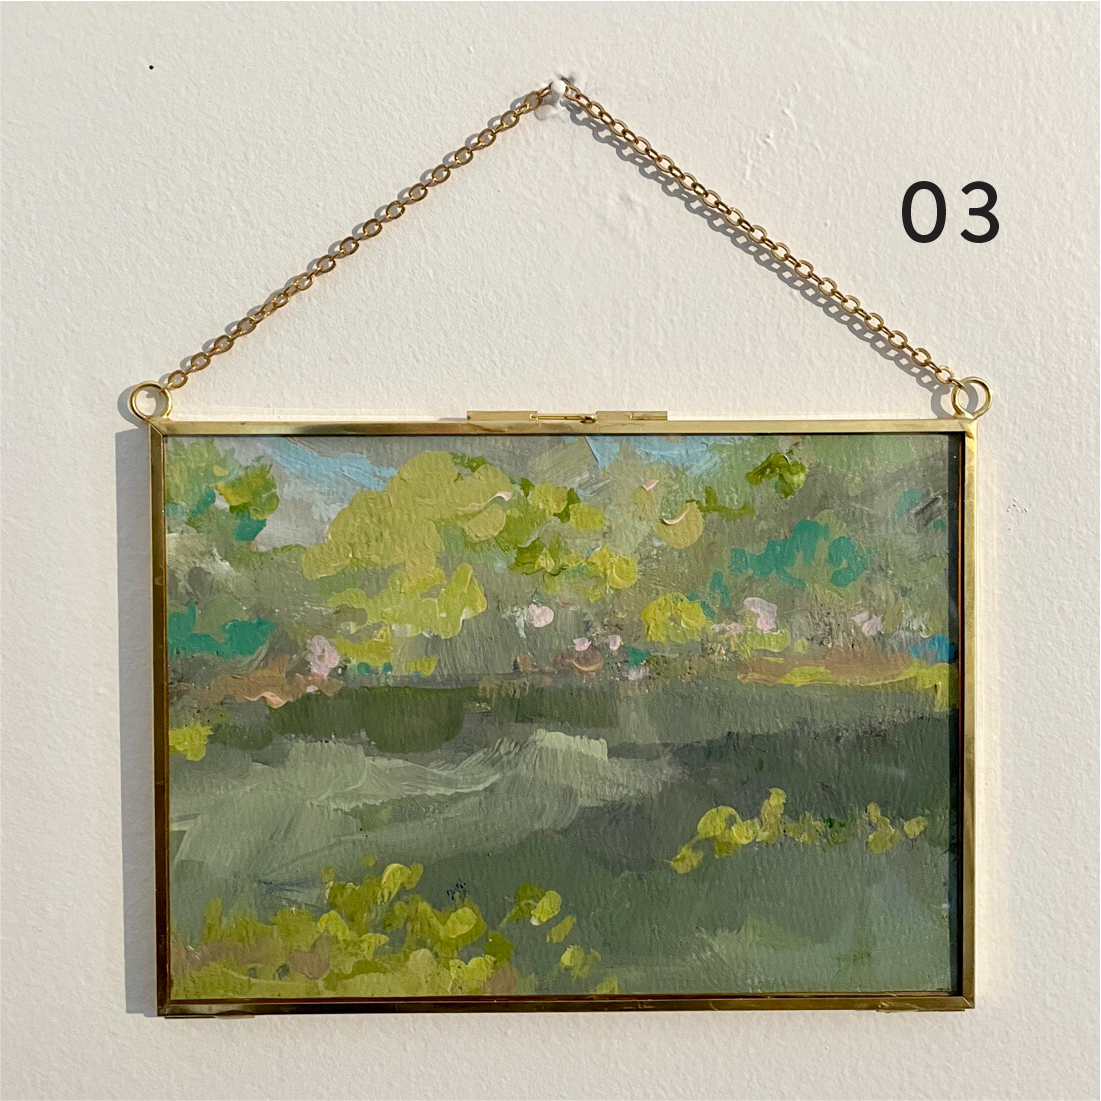 Mini Originals - 5x7" - Gold Hanging Frames